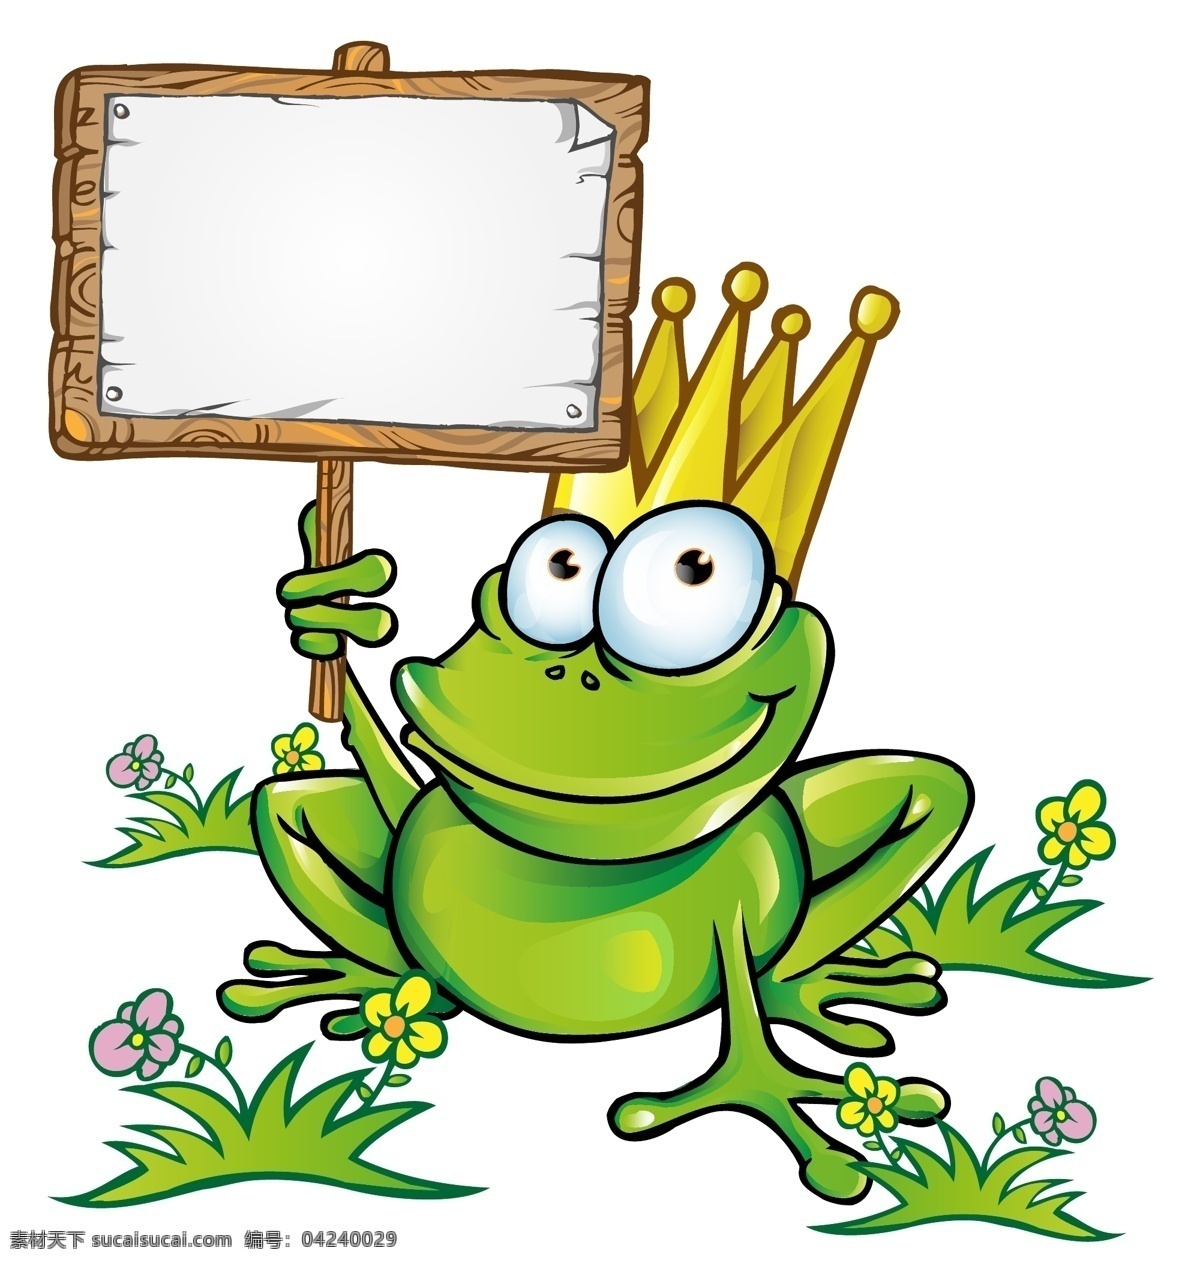 青蛙王子 卡通 王冠 皇冠 广告牌 童话世界 可爱 矢量素材 生物世界 野生动物 矢量